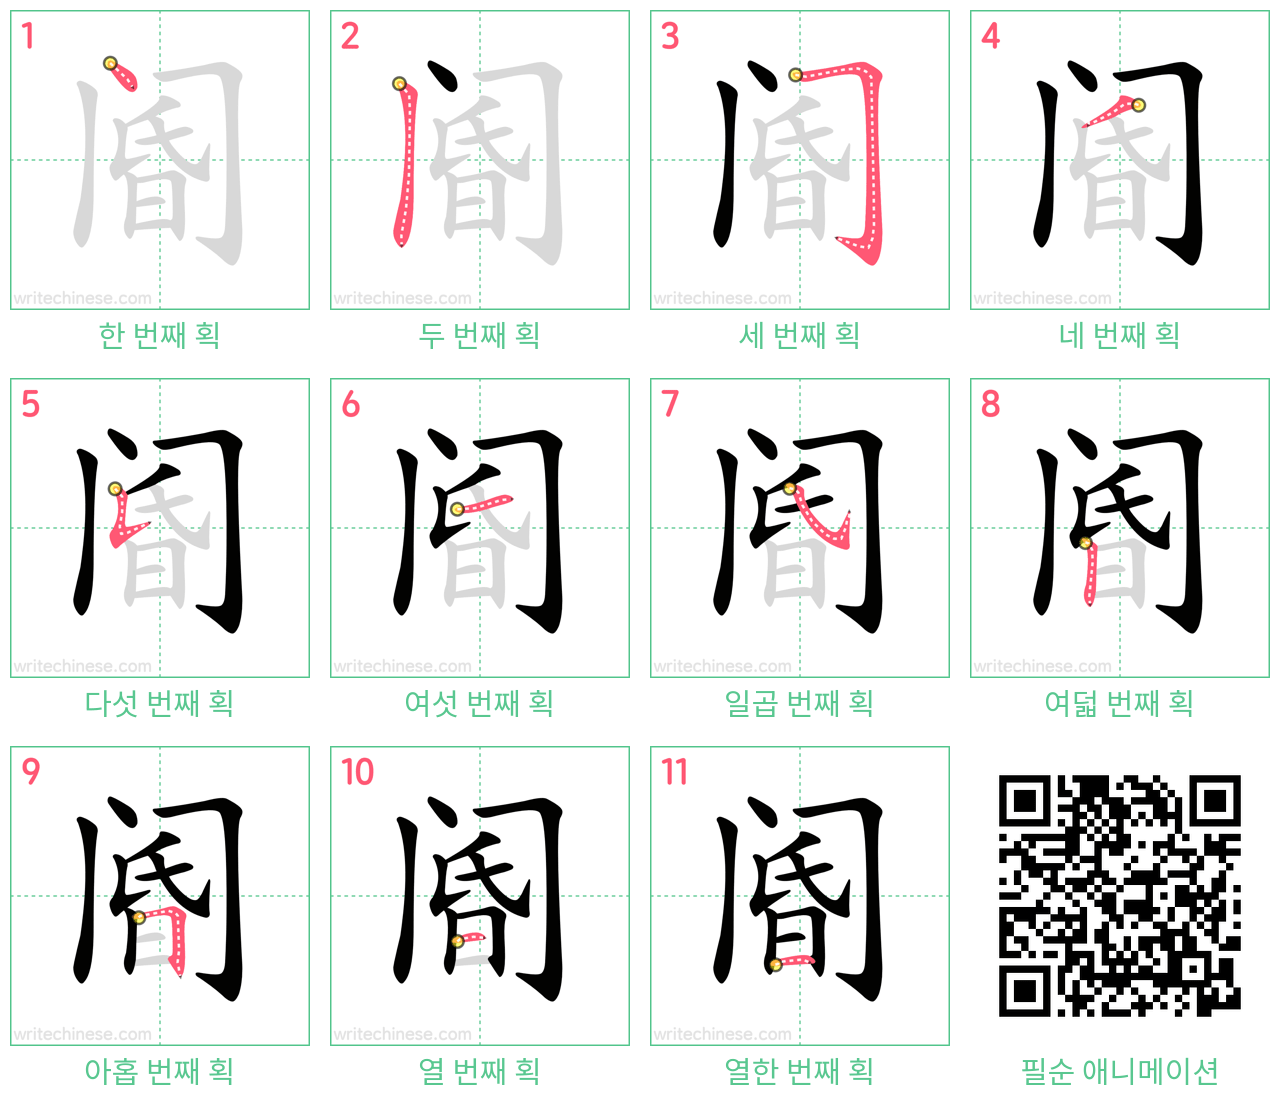 阍 step-by-step stroke order diagrams